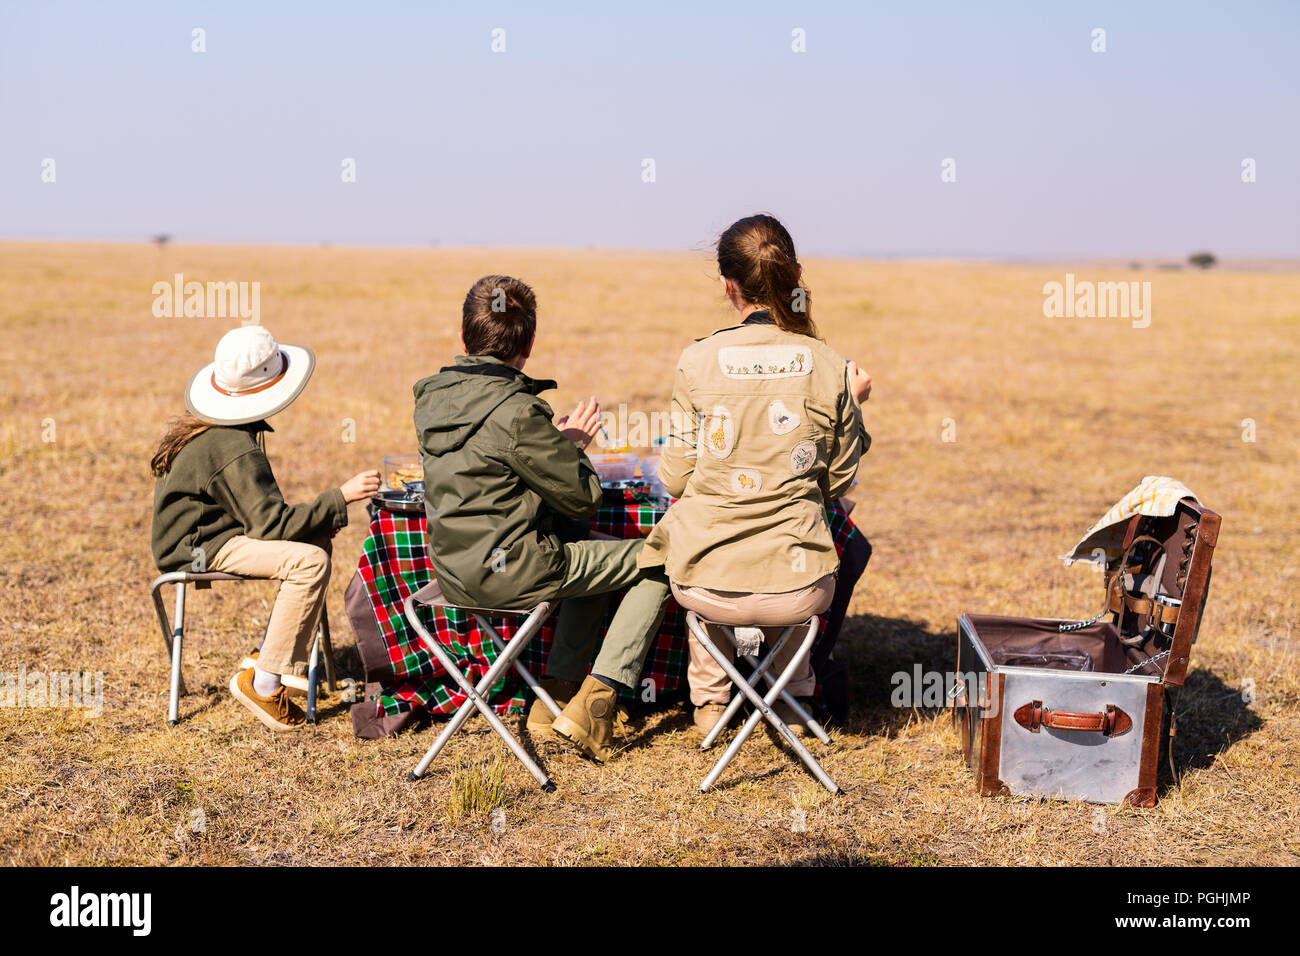 Vista posterior de la madre de familia y niños en safari africano vacaciones disfrutando de desayuno bush Foto de stock